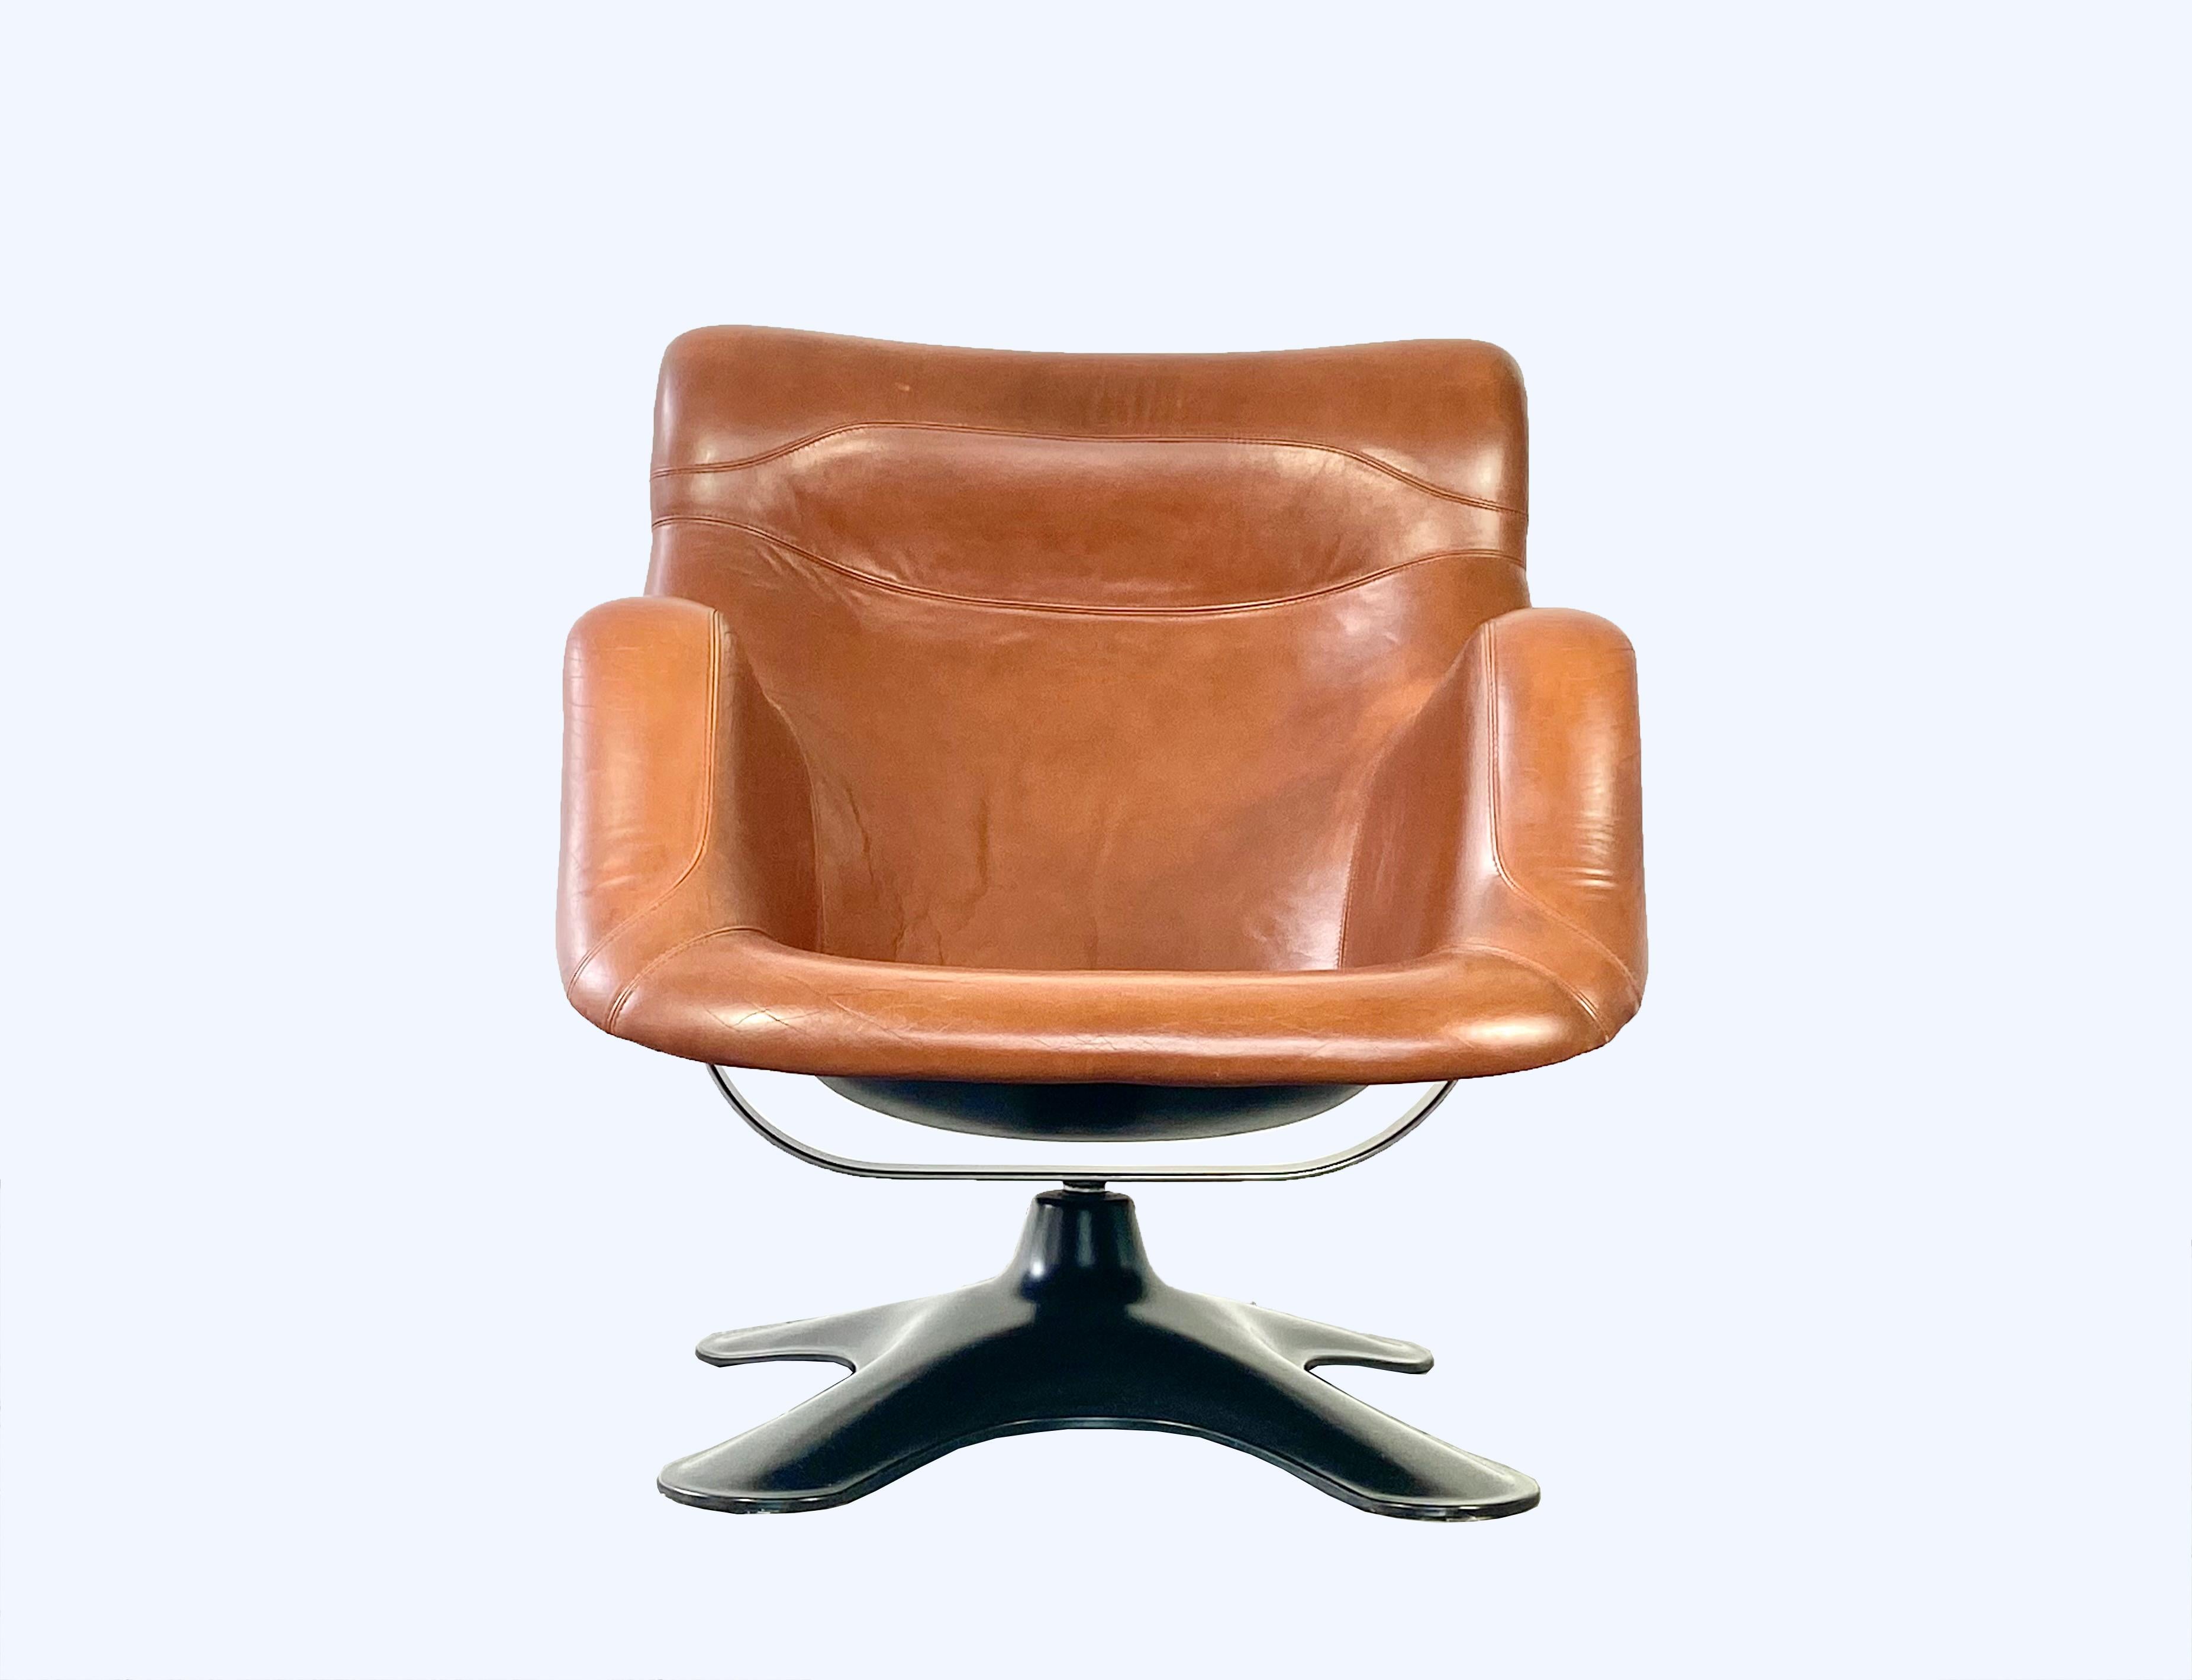 Chaise longue Karuselli très confortable et futuriste, conçue par Yrjö Kukkapuro en 1965.

Coque de siège en fibre de verre moulée noire, avec revêtement d'origine en cuir brun cognac, tonalité 244. Équipé d'une fonction de pivotement à 360